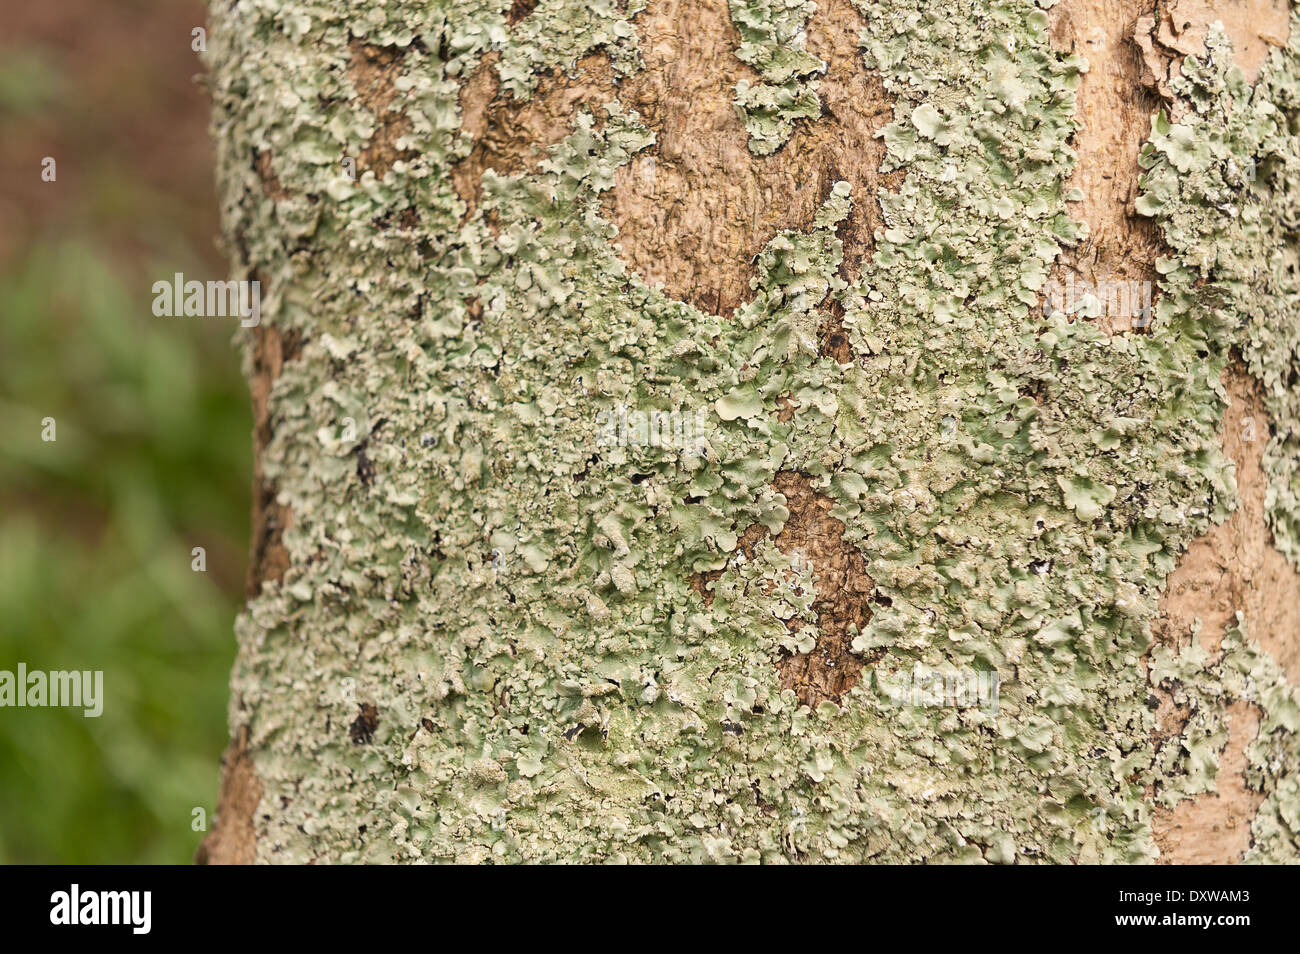 Les lichens foliacés anneau rond patch patches sur l'écorce d'un arbre de vie avec des traînées d'algues orange tronc vers le bas Banque D'Images